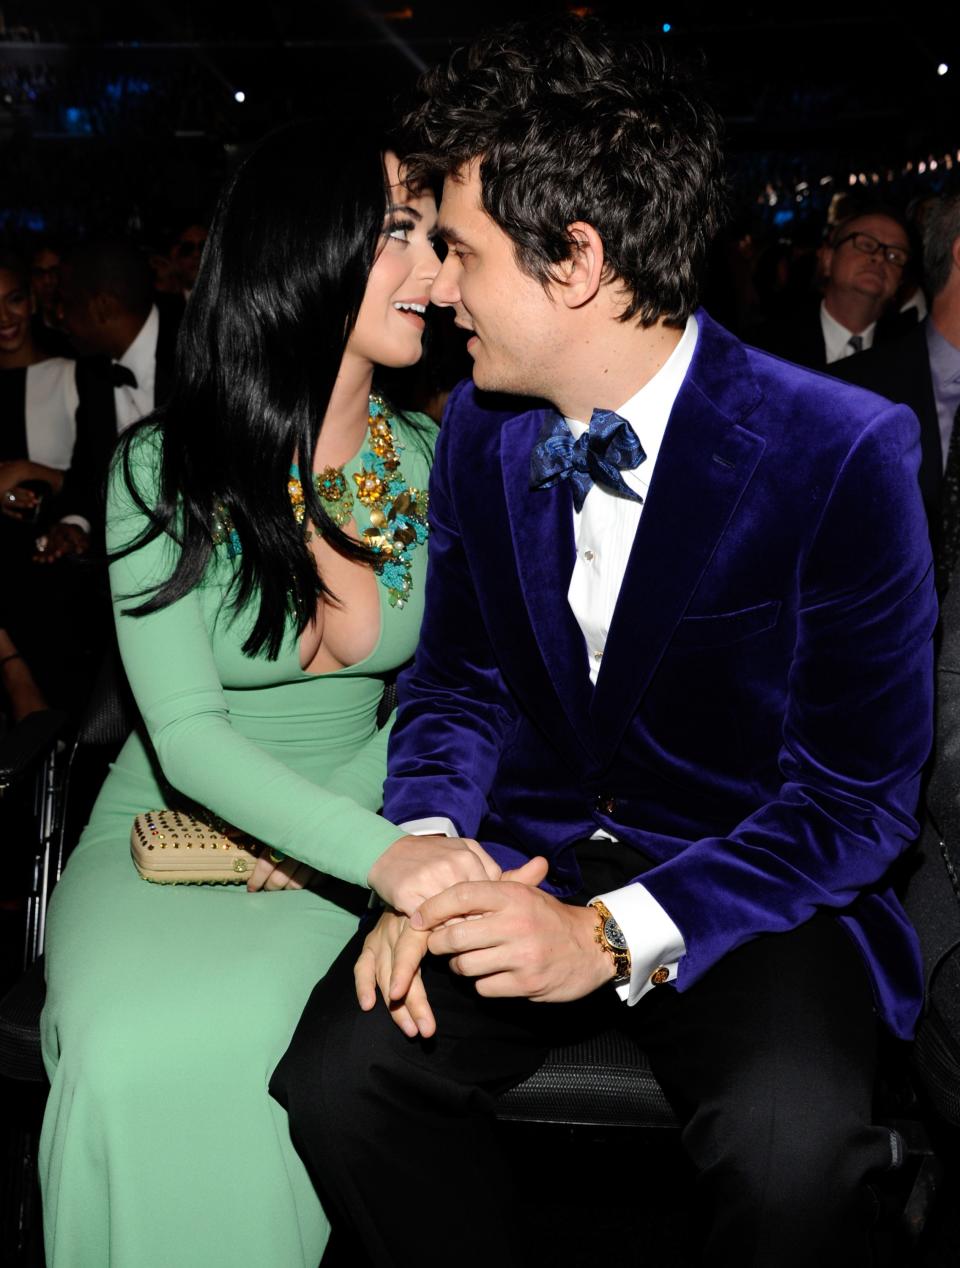 2013: Katy Perry and John Mayer